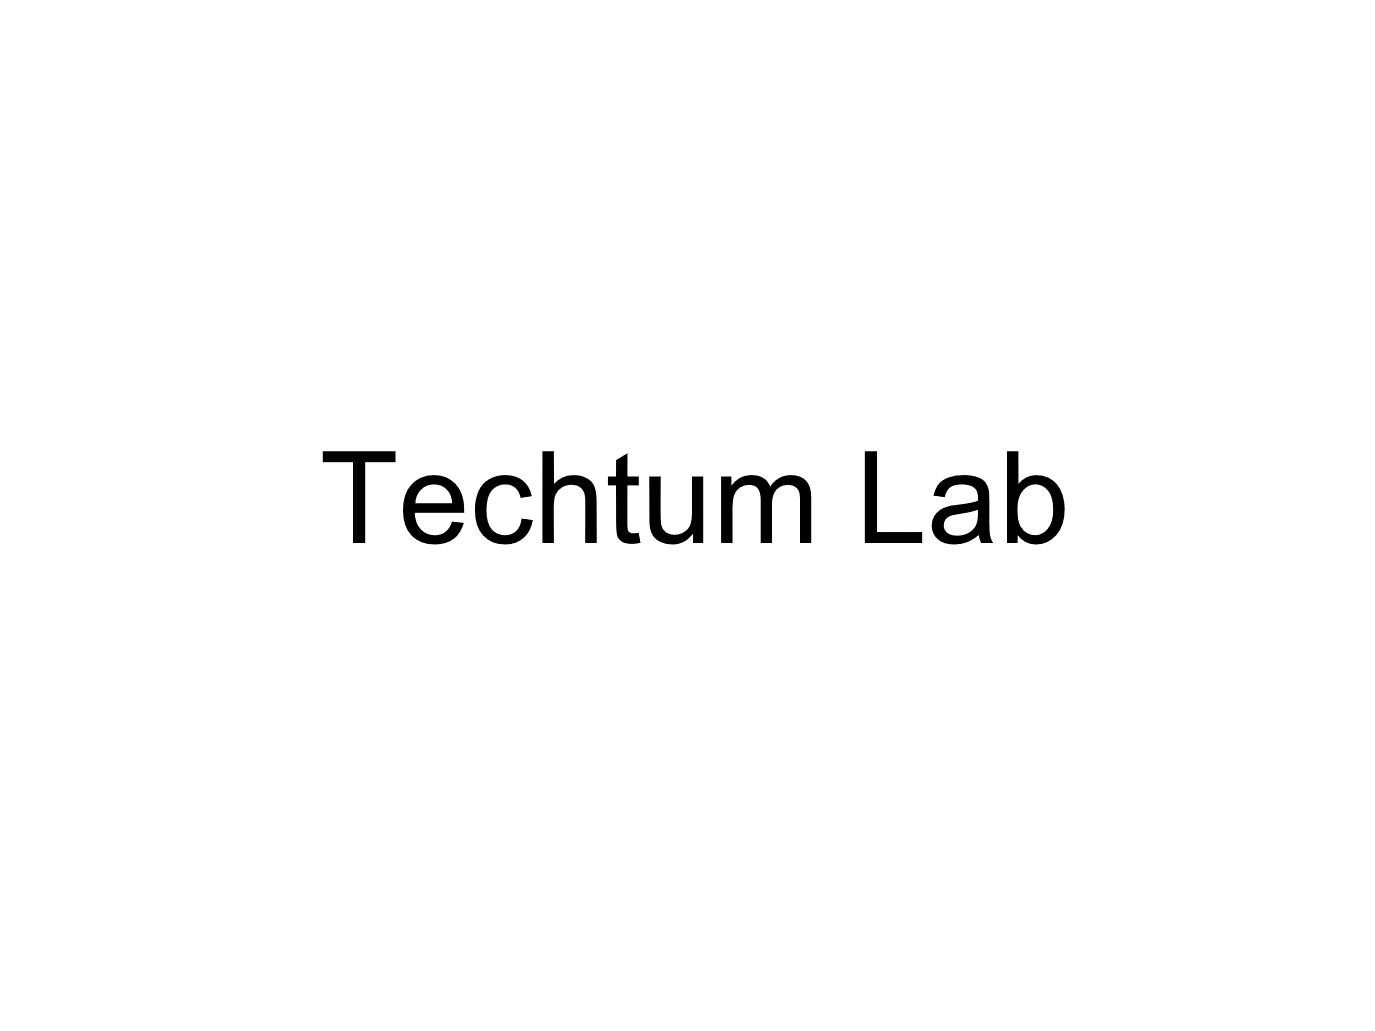 Techtum